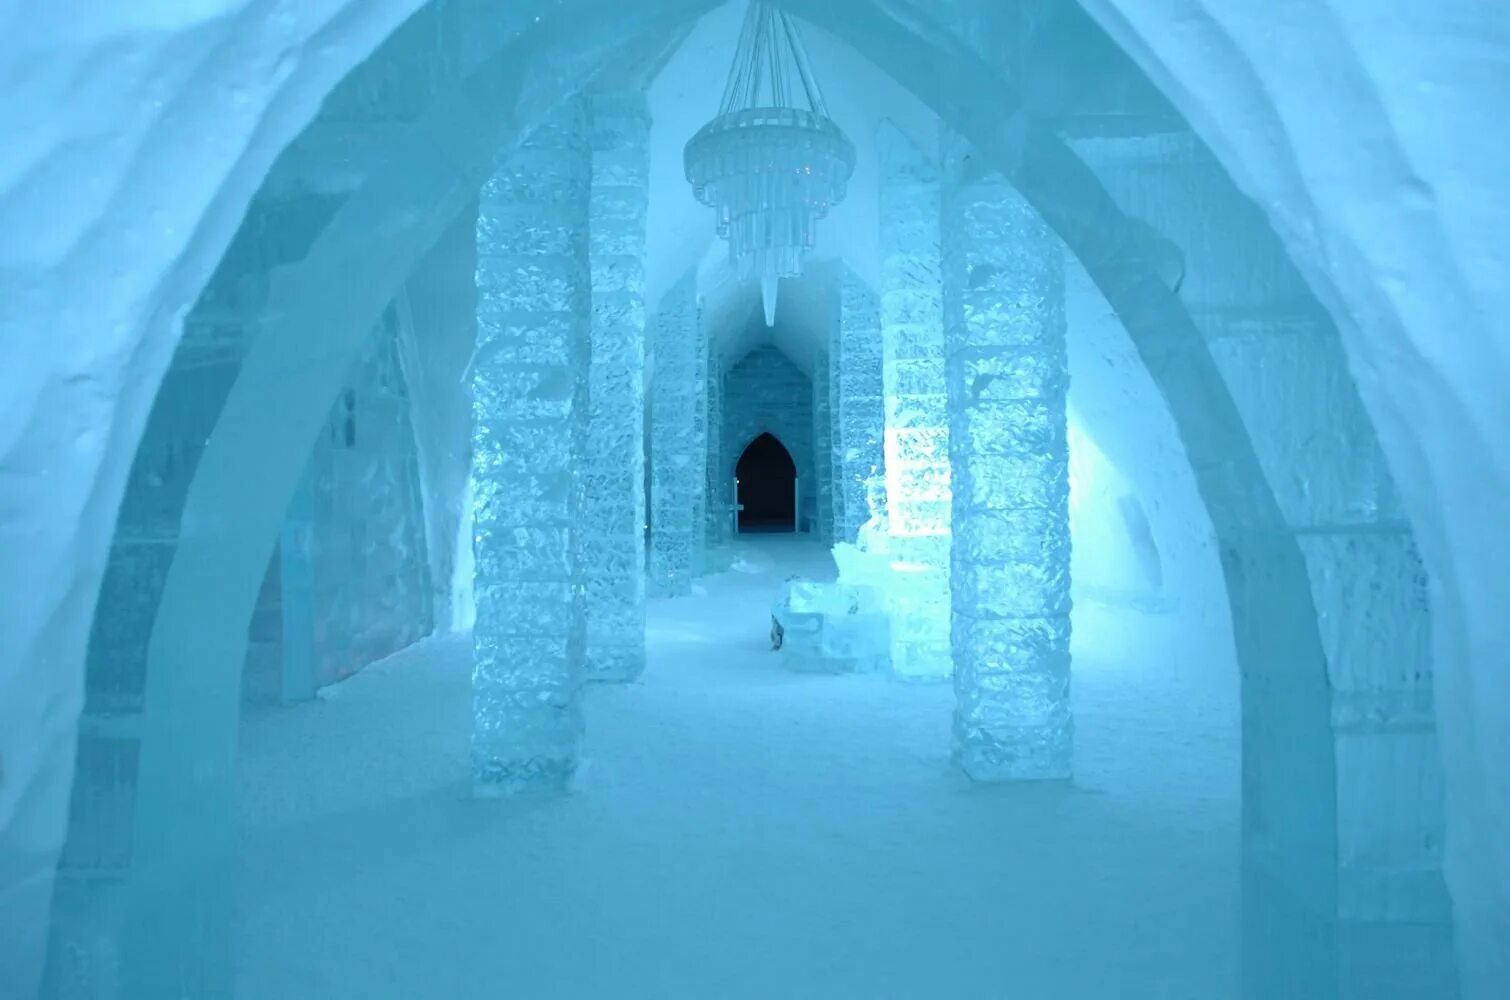 Ice only. Дворец Тронный зал снежной королевы. Хроники Нарнии ледяной дворец. Ледяной дворец снежной королевы внутри. Ледяной Тронный зал с королевой.